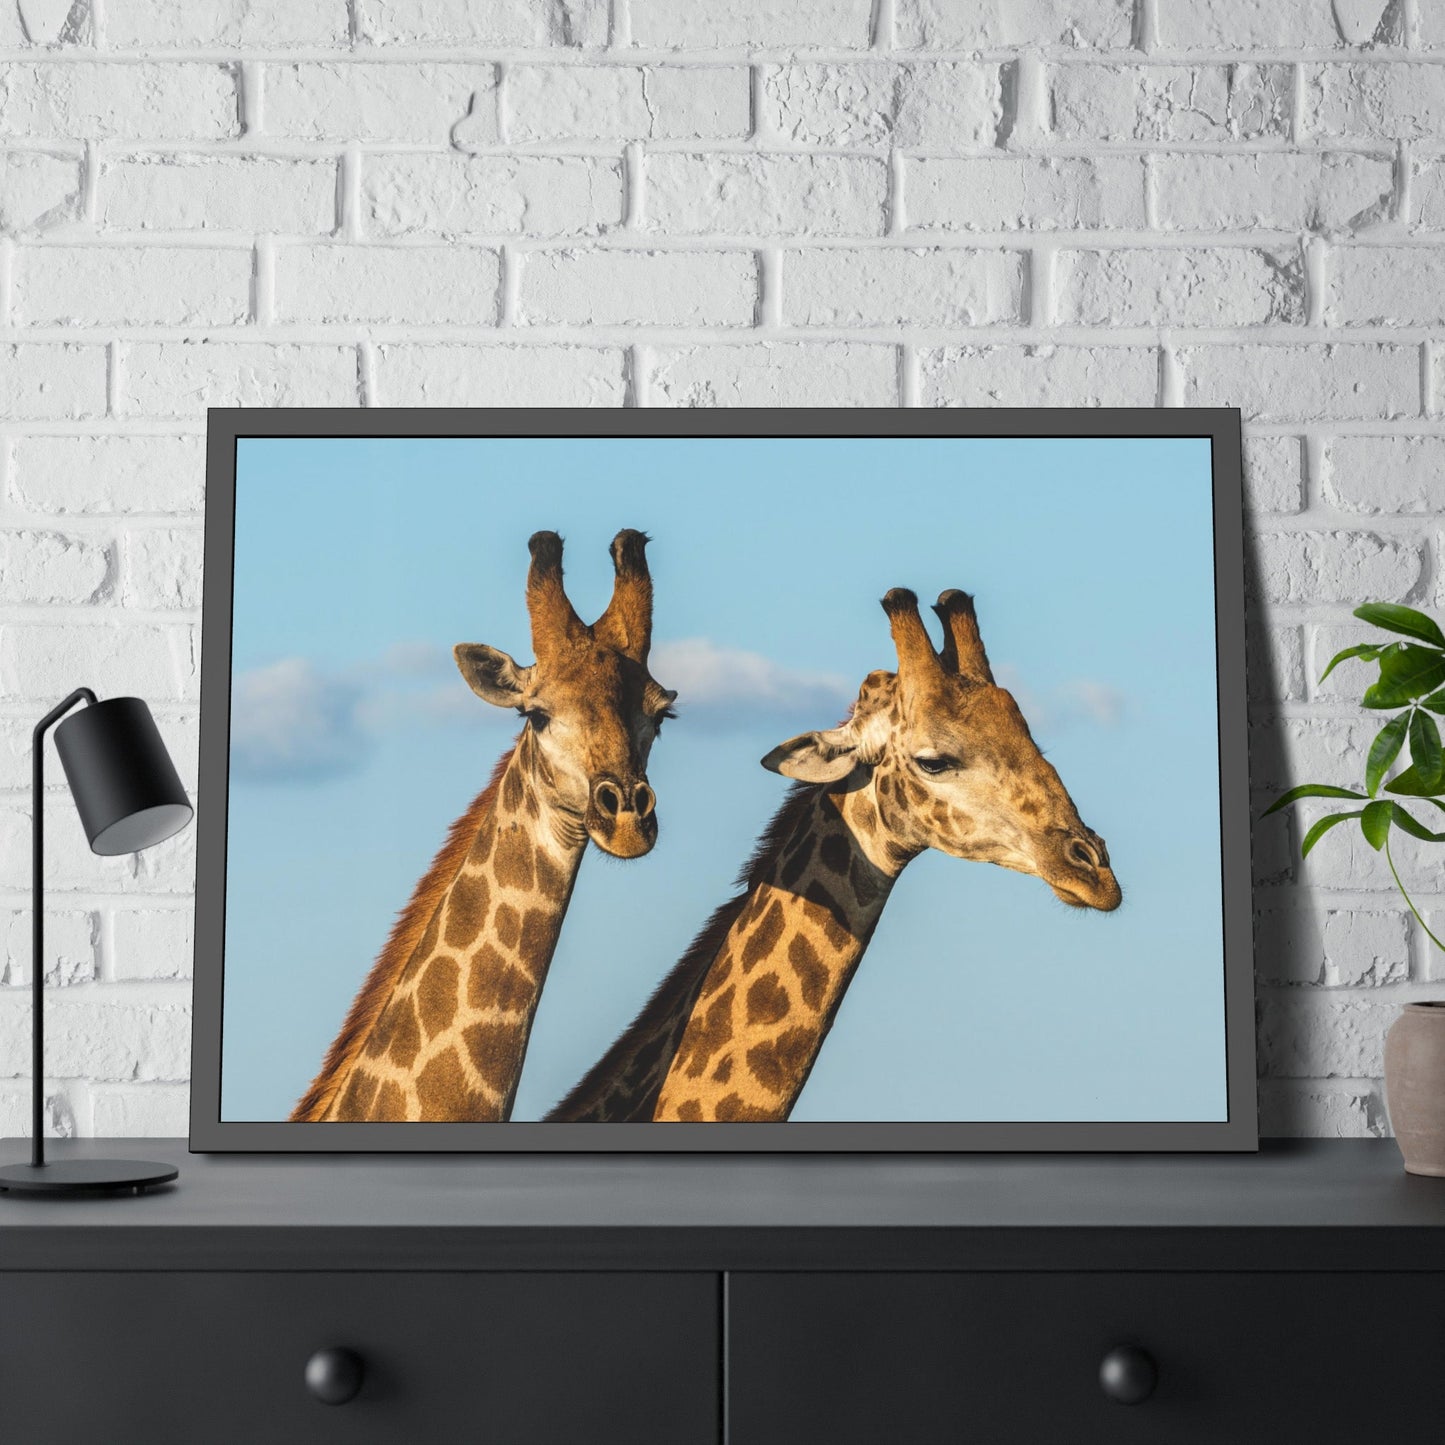 African Adventure: Canvas Wall Art of Giraffes Roaming the Plains